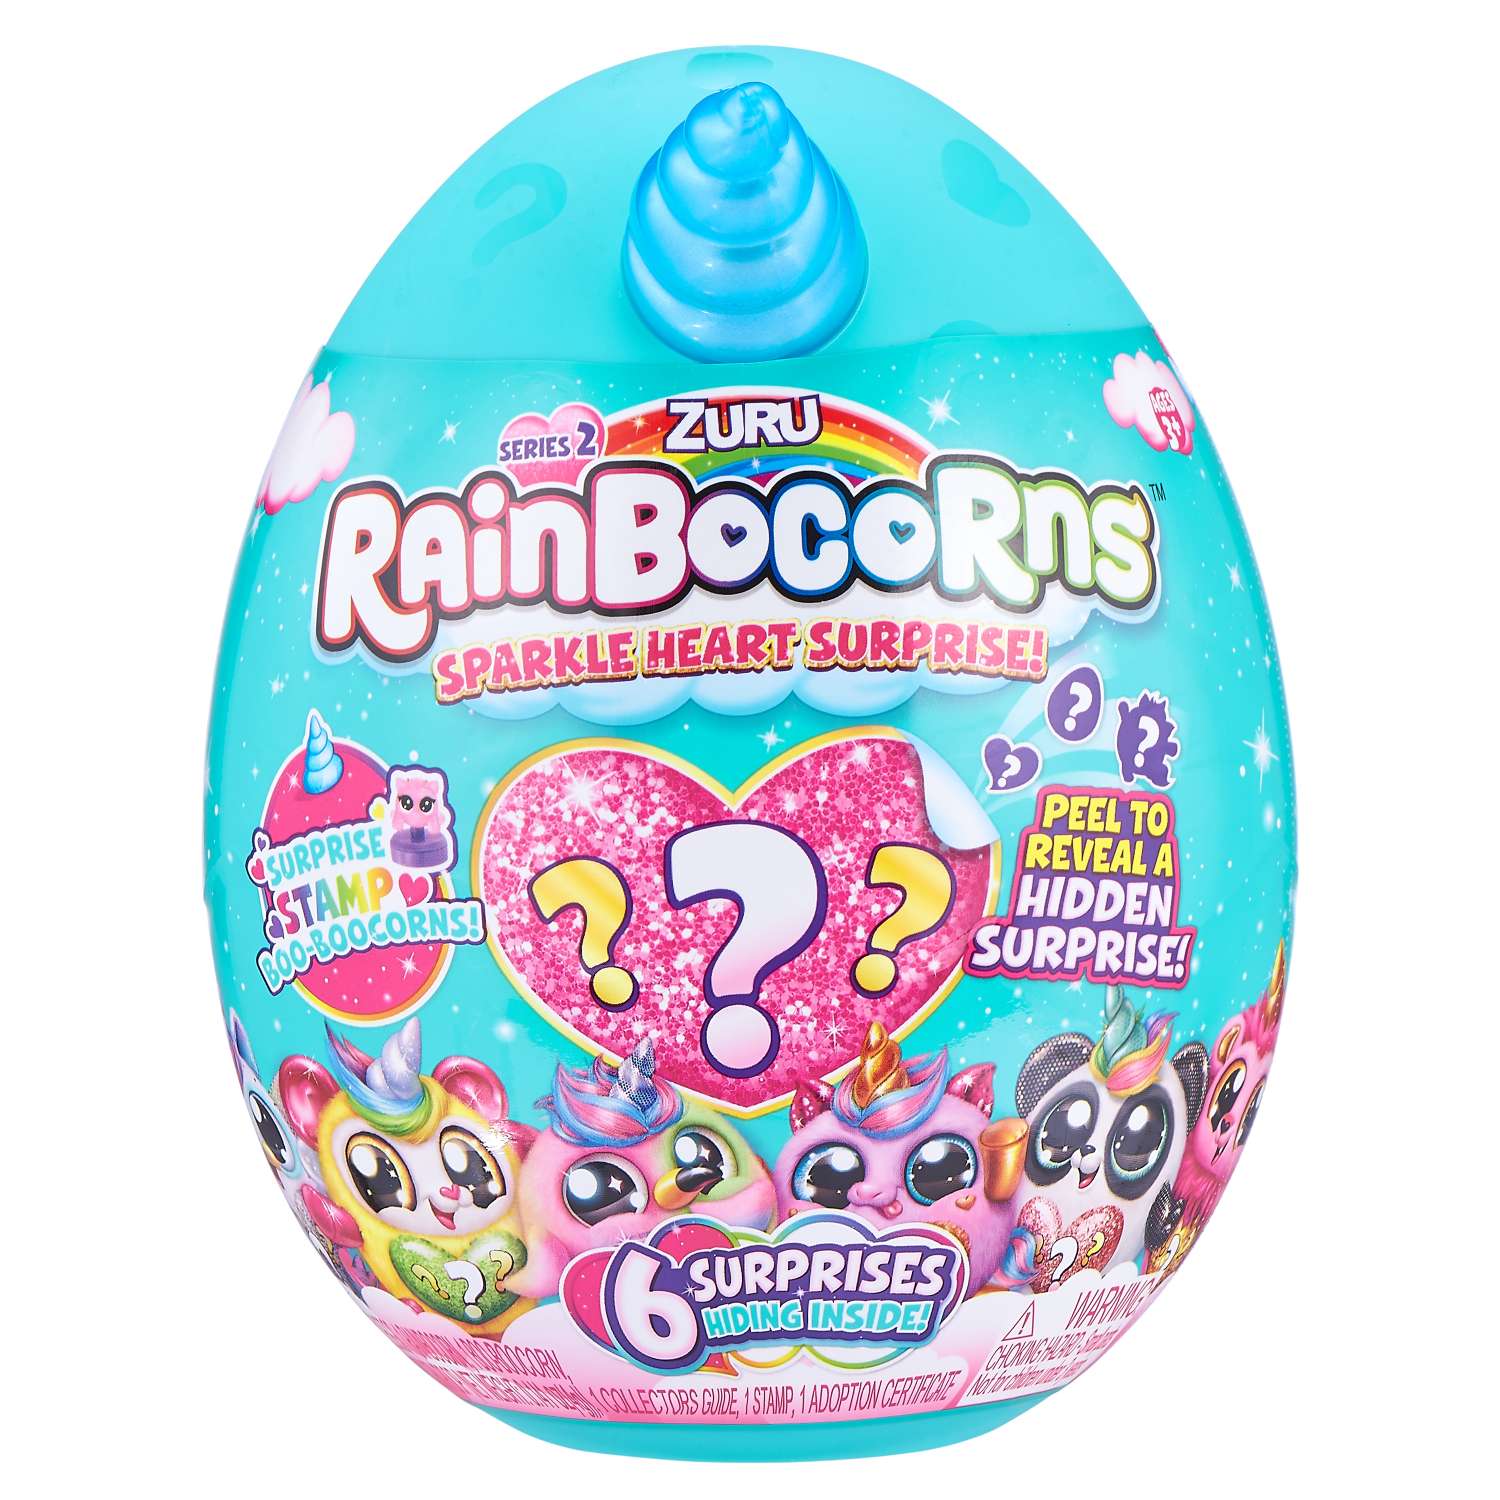 Игрушка Rainbocorns Rainbocorns Sparkle heart surprise S2 в непрозрачной упаковке (Сюрприз) 9214-S001 - фото 4